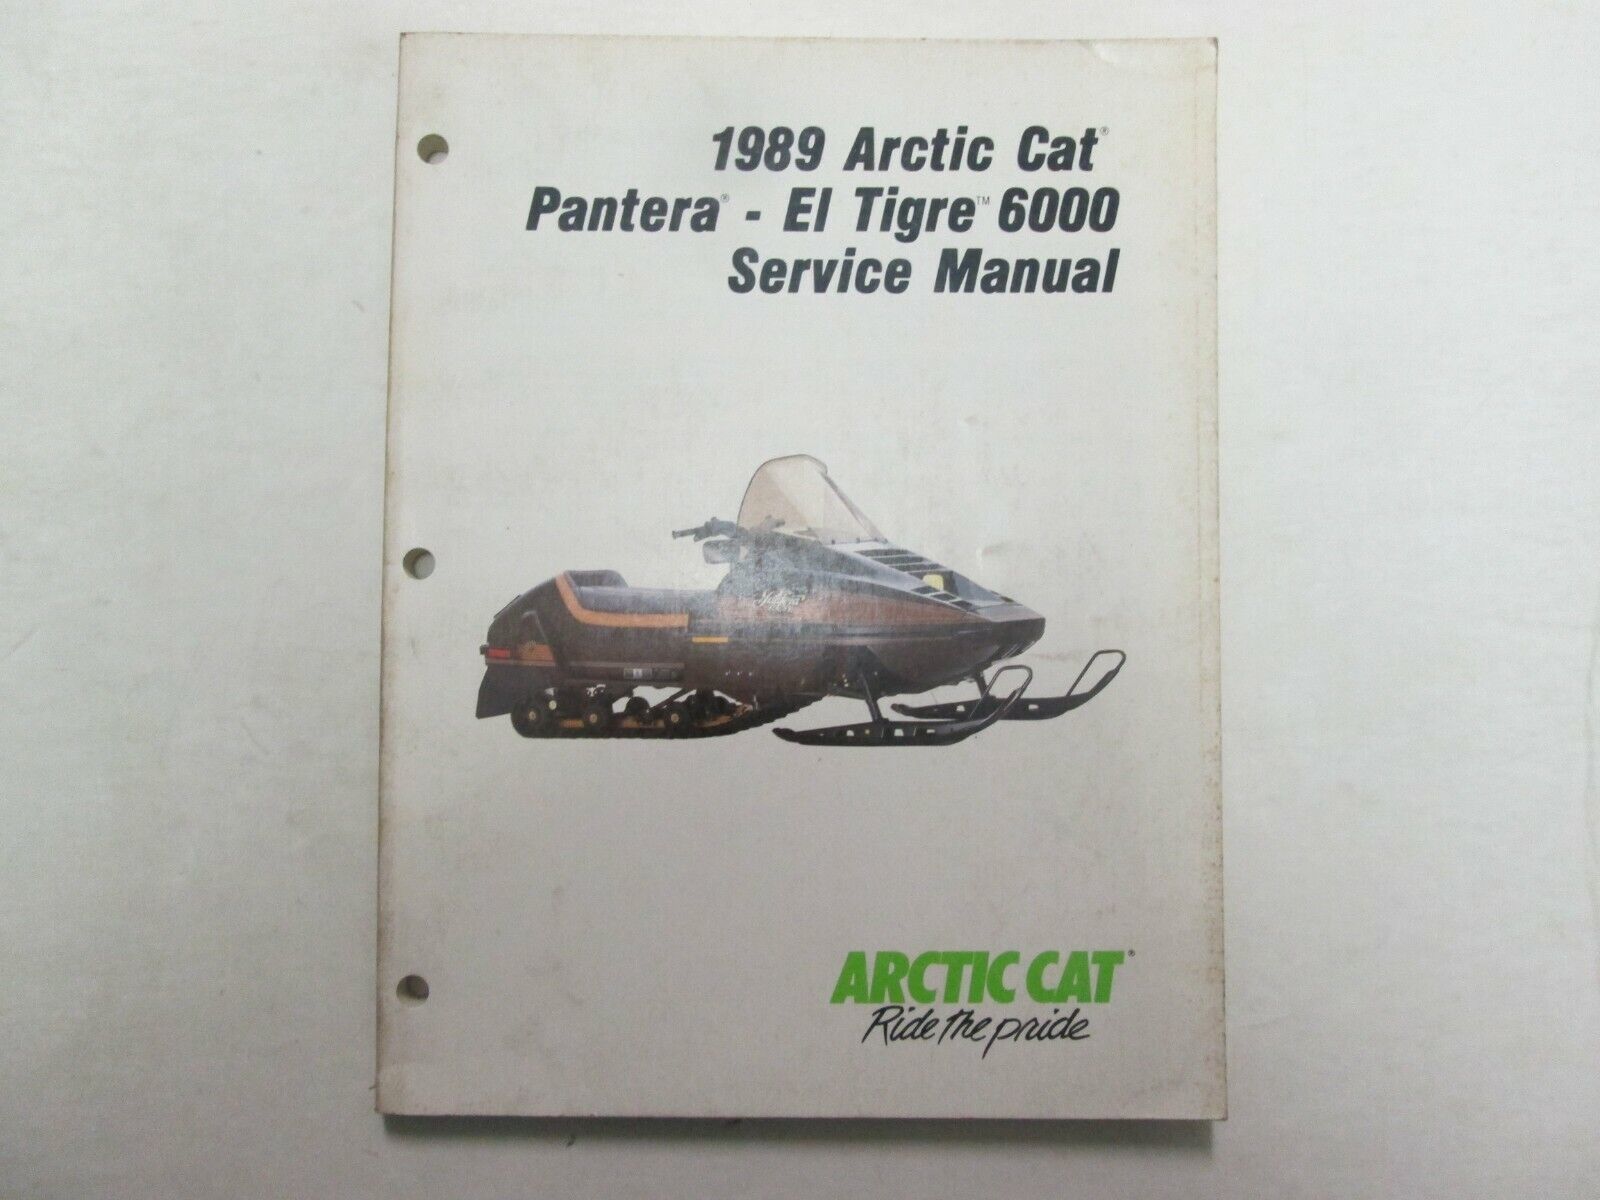 Primary image for 1989 Arctic Cat Pantera- El Tigre 6000 Service Repair Shop Manual p/n 2254-497